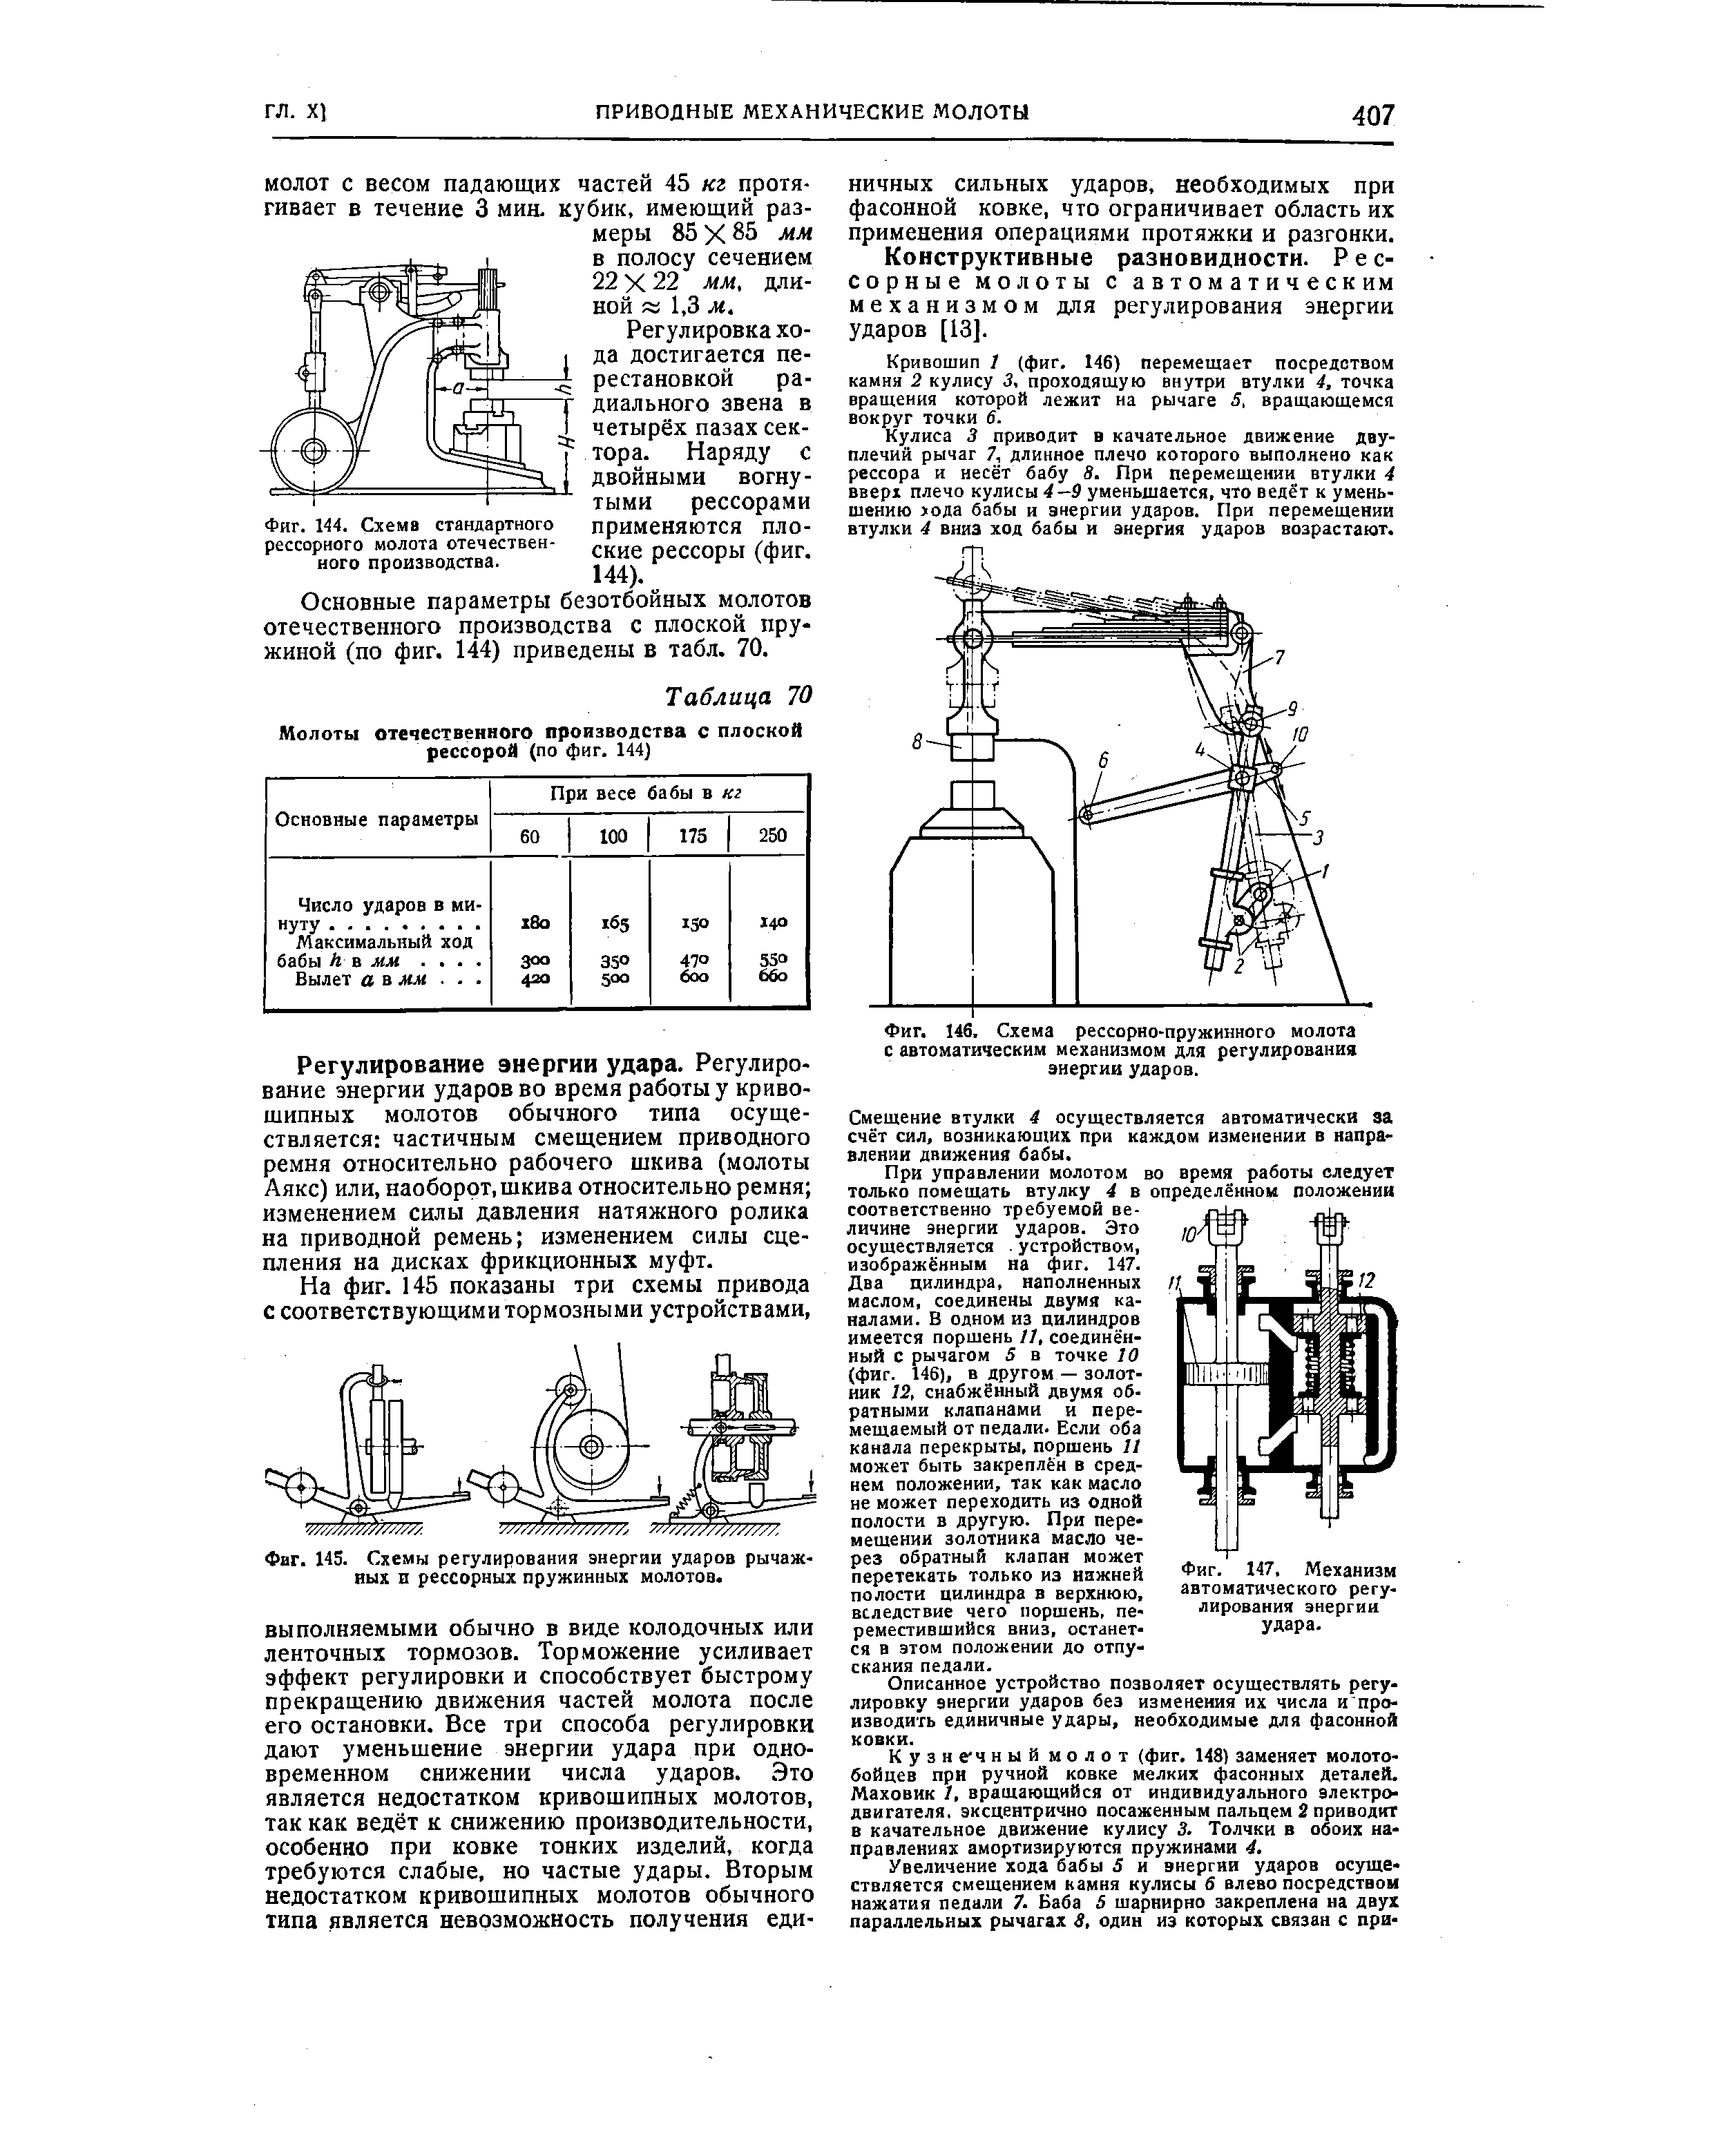 Фиг. 146, Схема рессорно-пружинного молота с автоматическим механизмом для регулирования энергии ударов.
